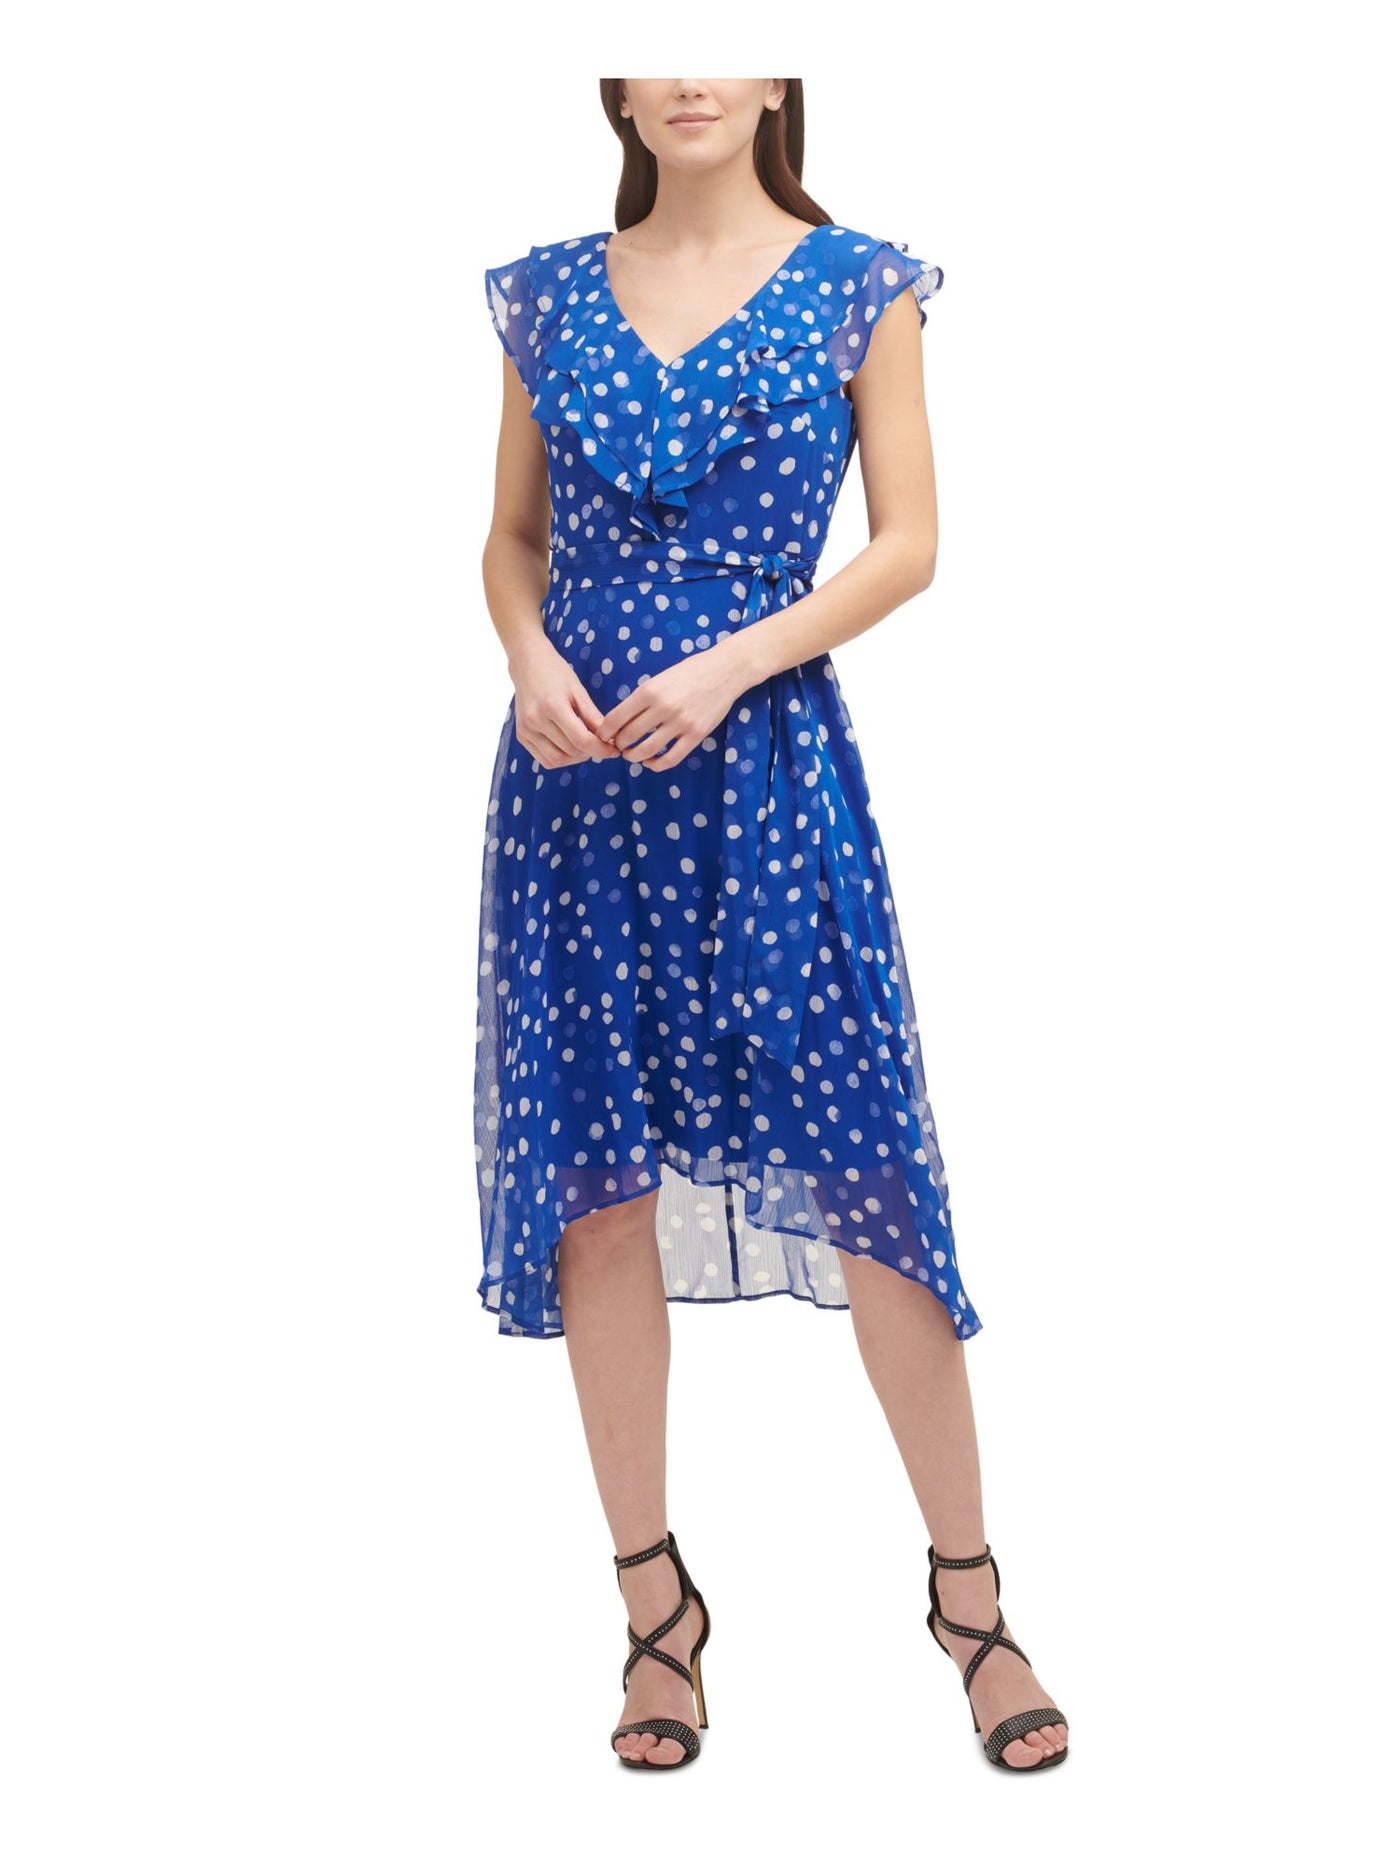 DKNY Womens Blue Zippered Ruffled Tie Polka Dot Cap Sleeve V Neck Midi Cocktail Fit + Flare Dress 14